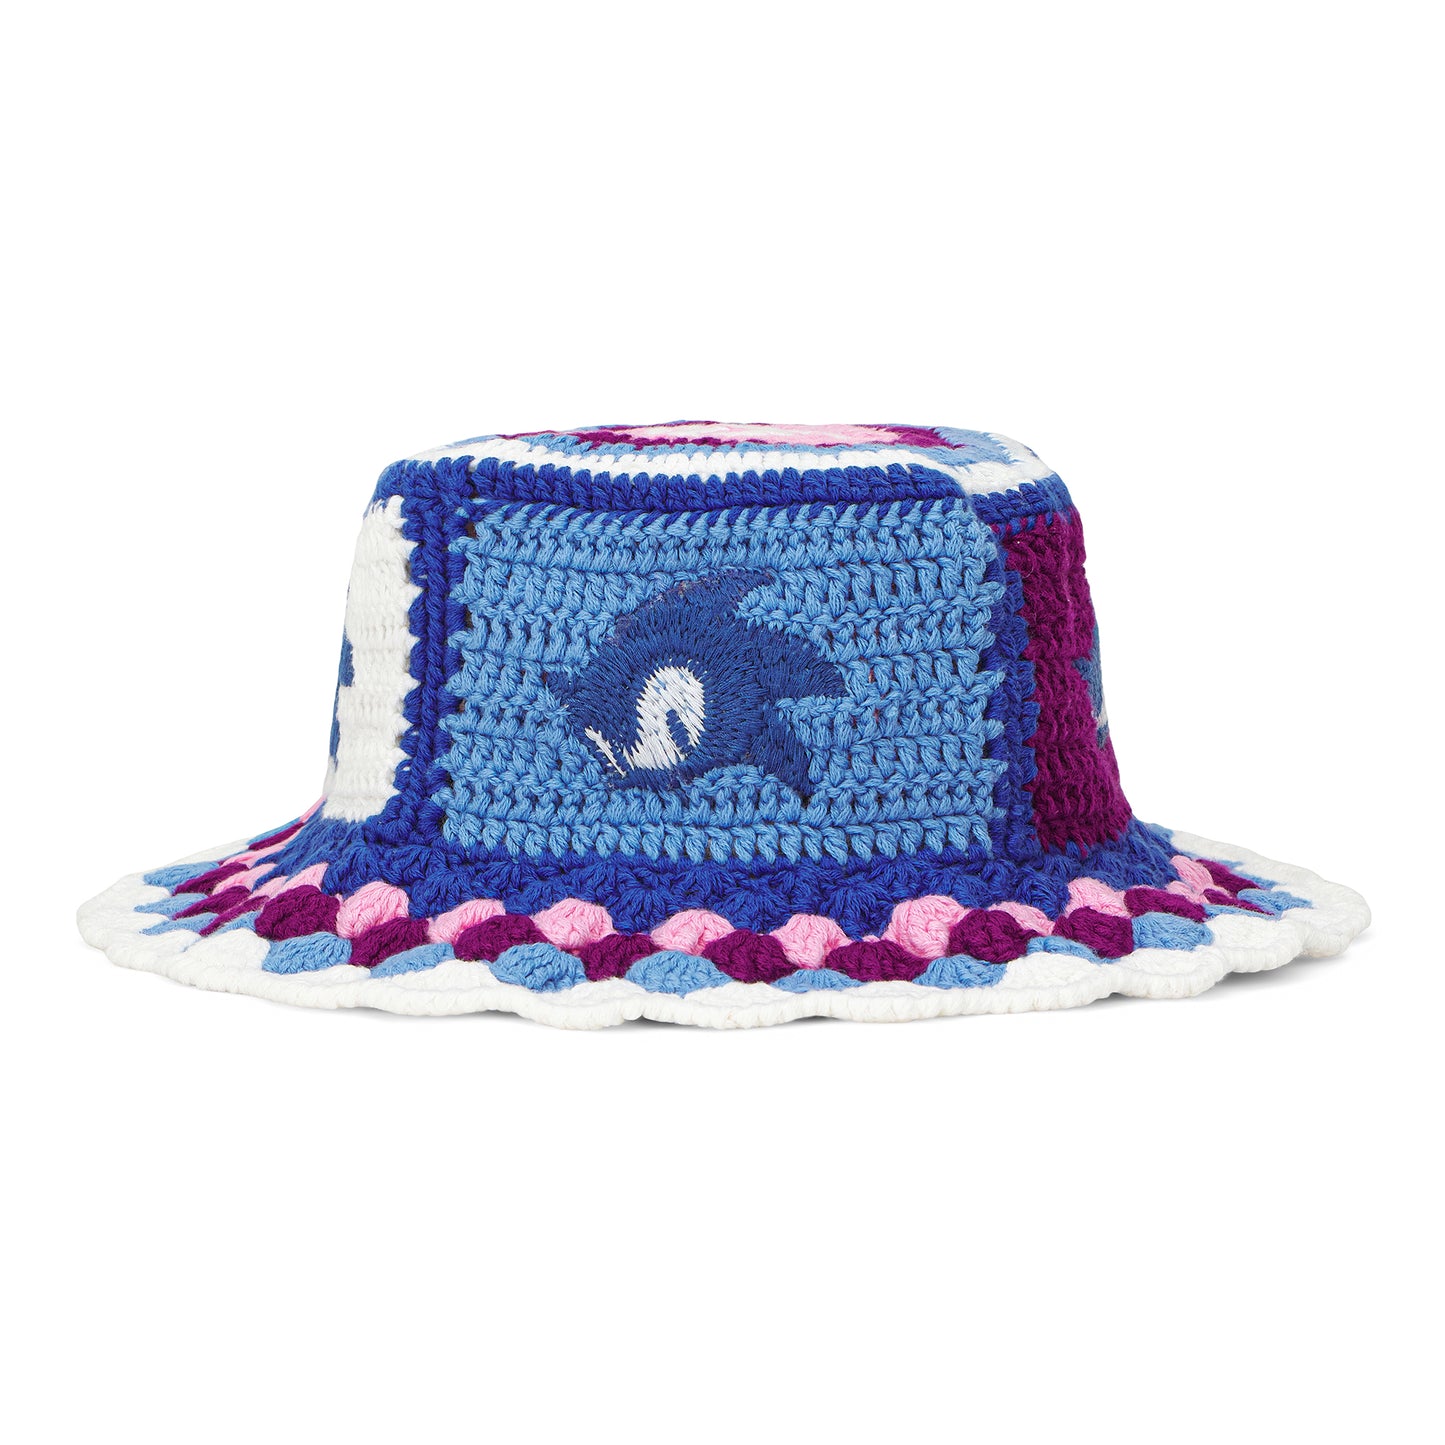 SONIC BLUR CROCHET BUCKET HAT (PURPLE/BLUE)